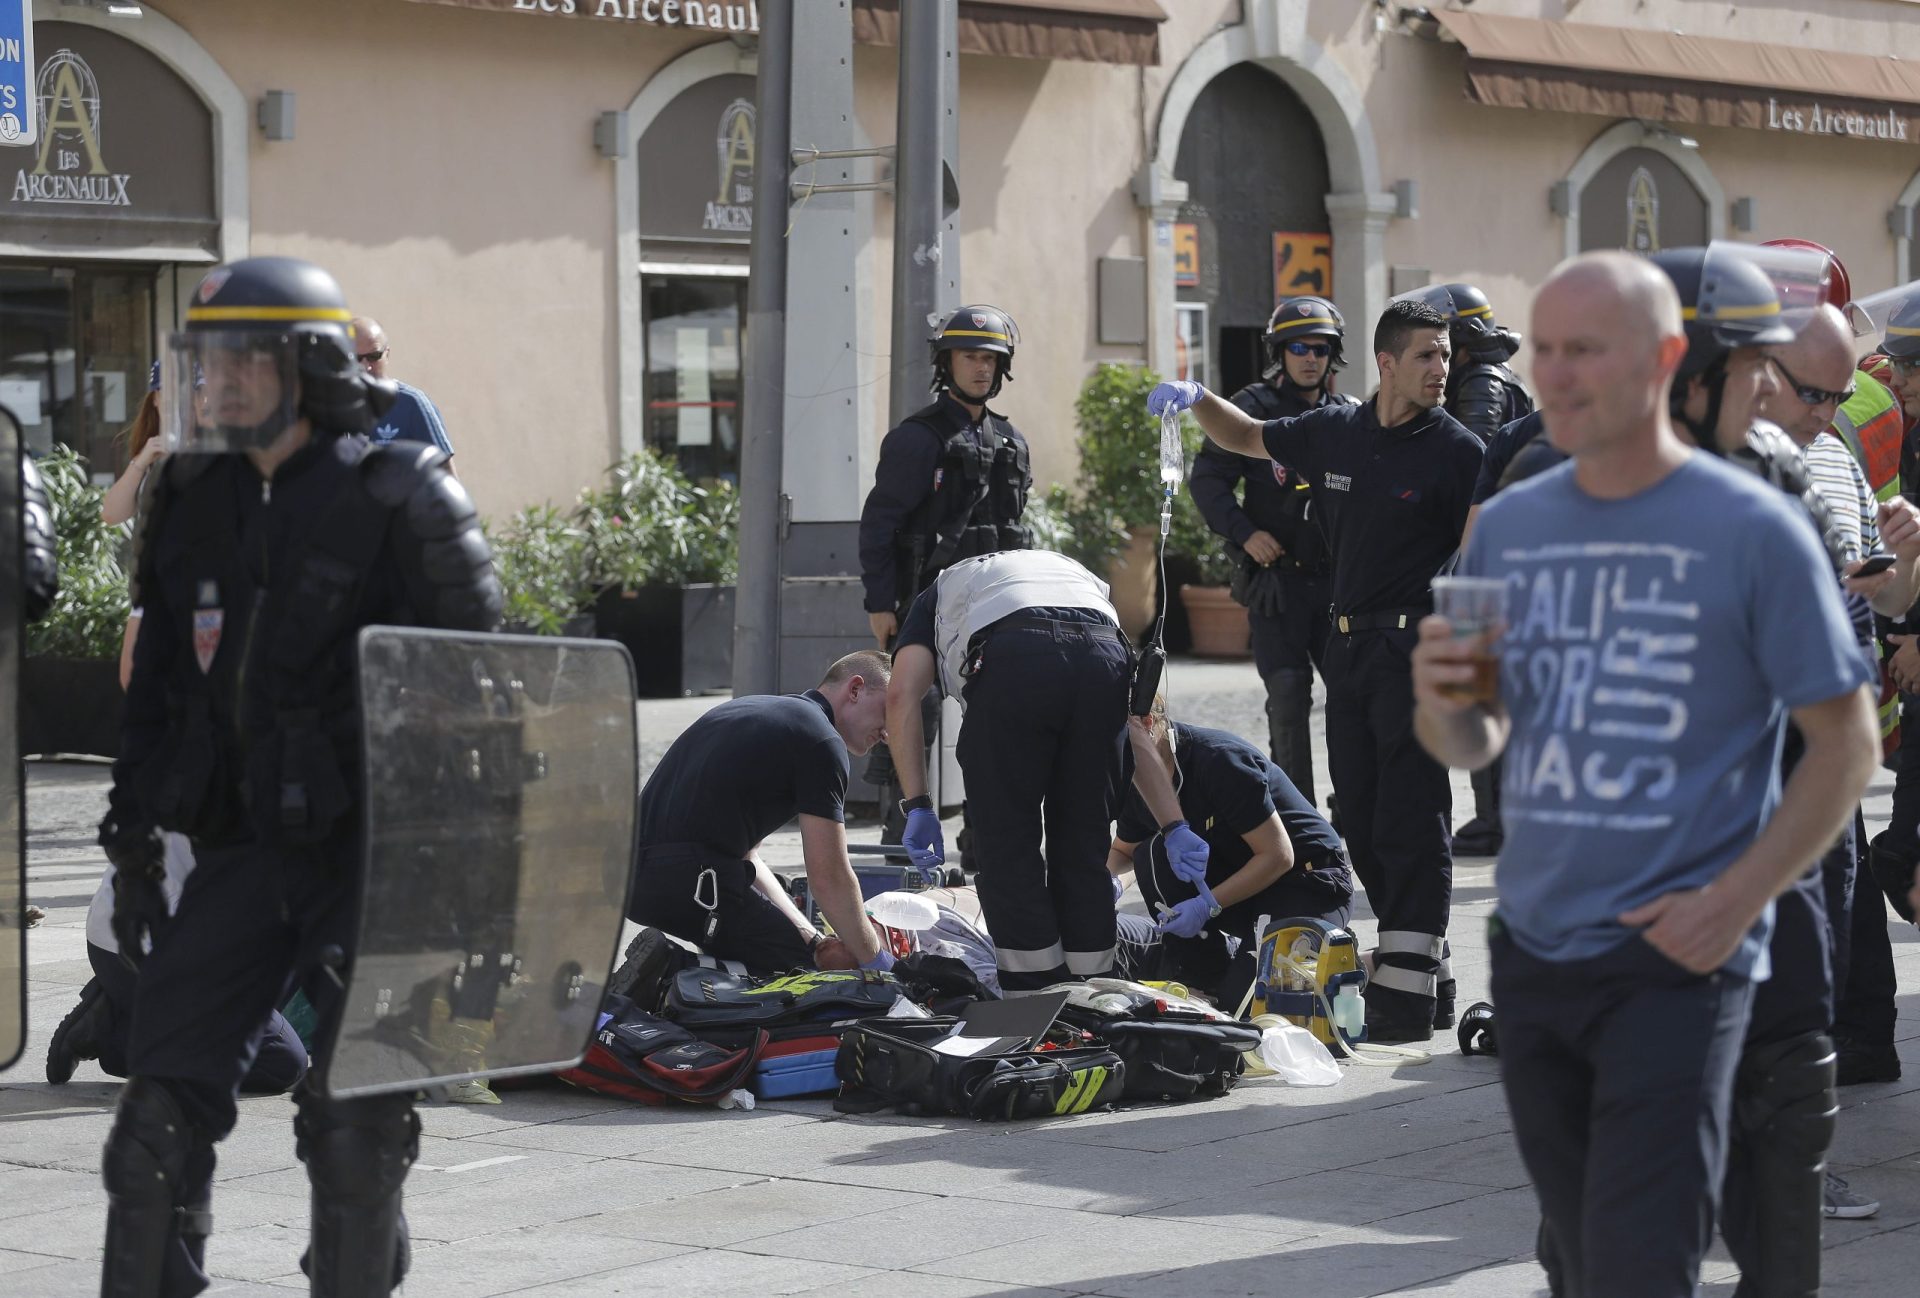 Euro2016: Confrontos entre adeptos provocam caos em Marselha [fotogaleria]